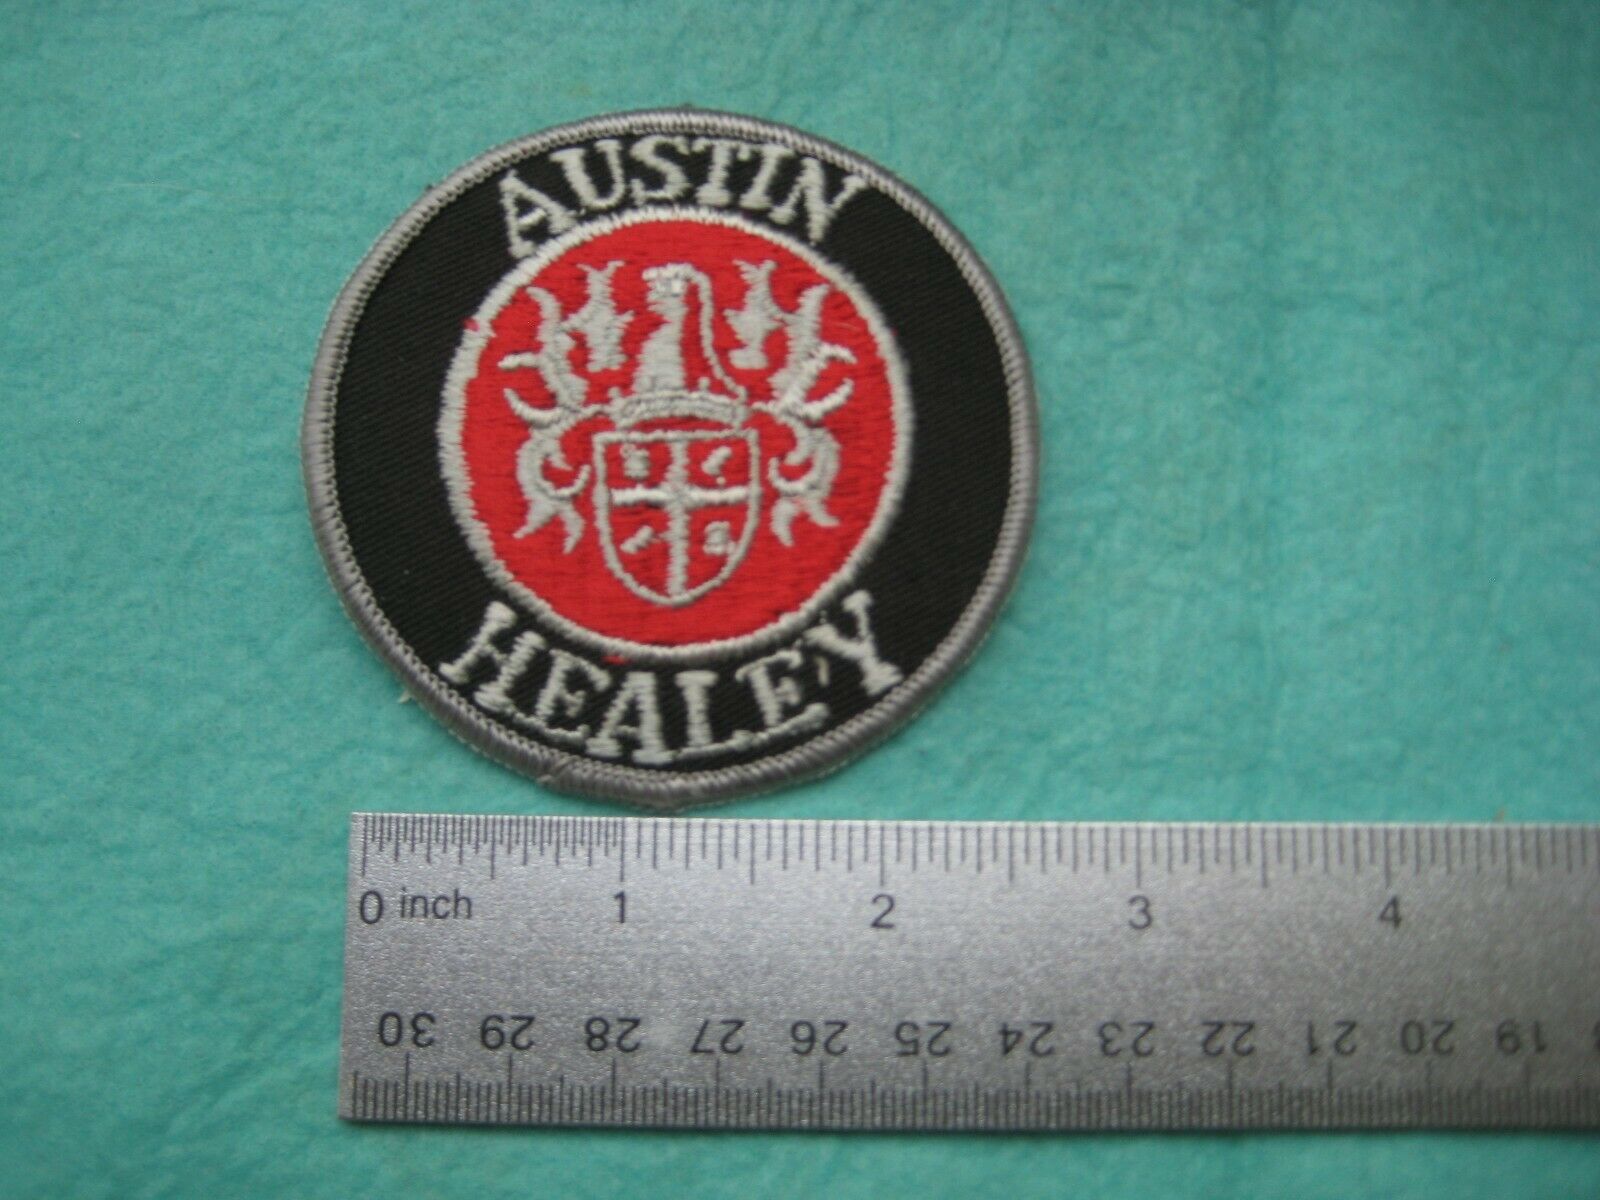 Vintage Austin Healey  Service Parts Dealer Uniform Hat Patch